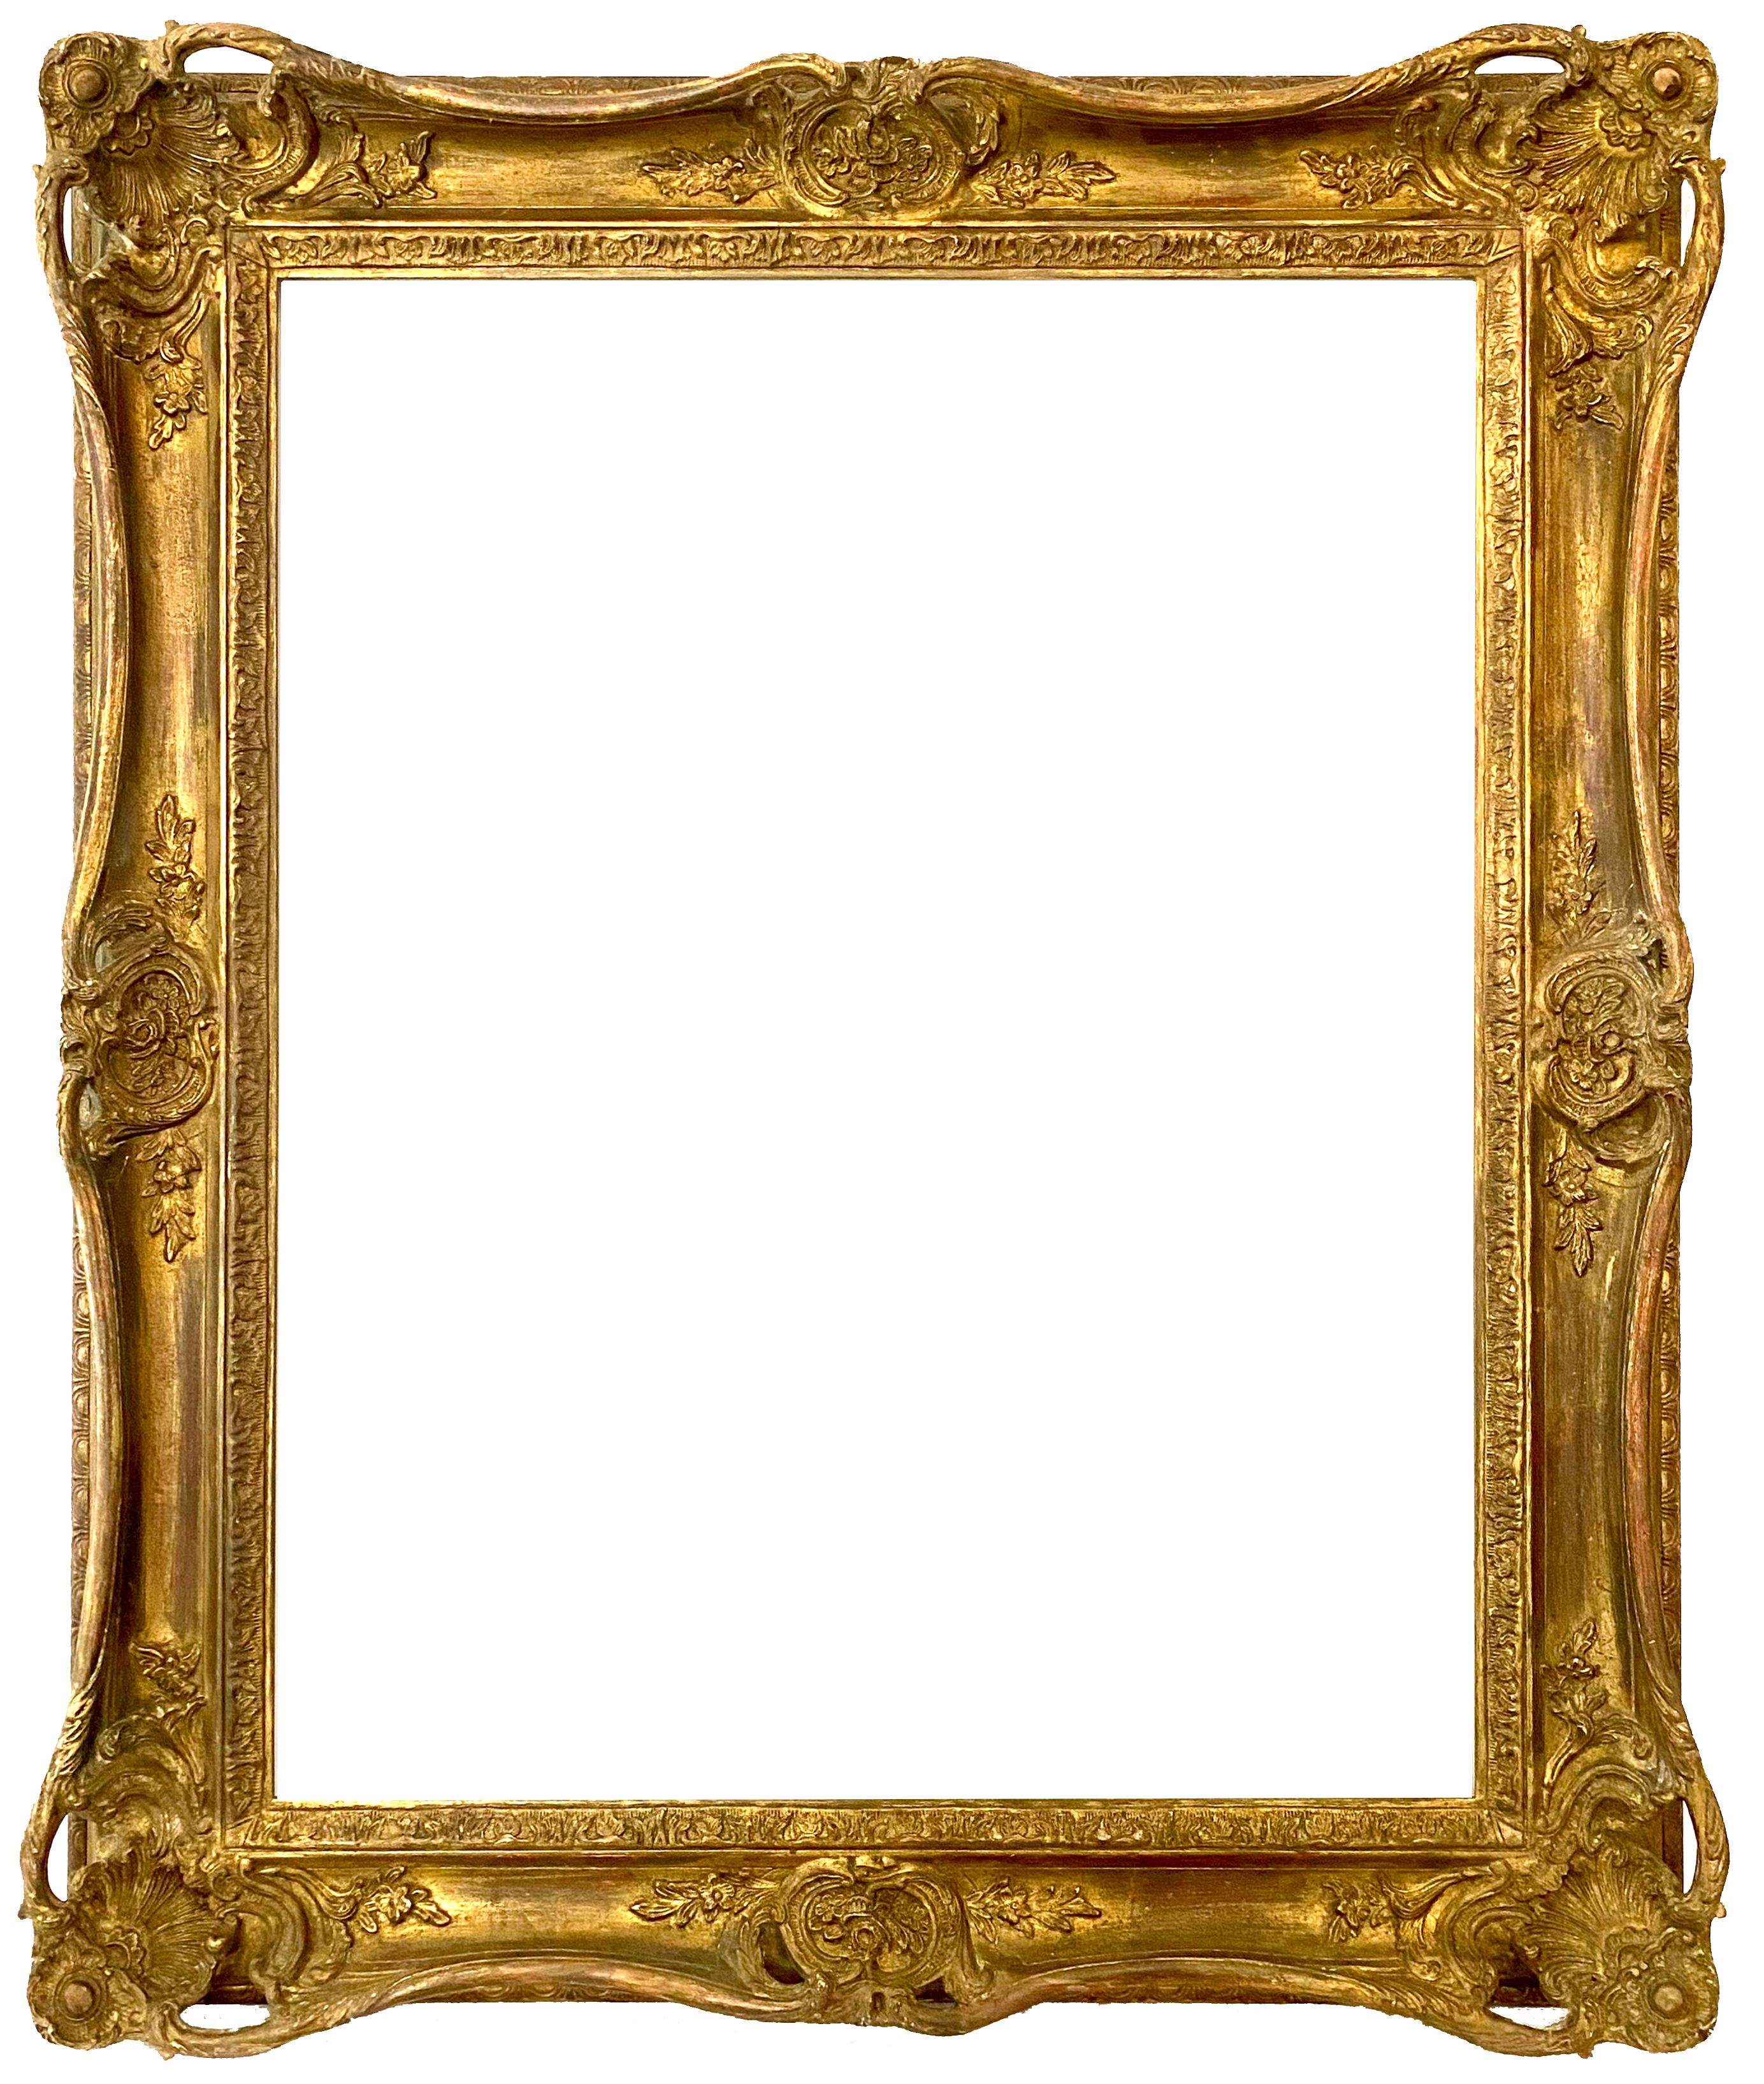 Cadre de style Louis XV - 70,80 x 56,00 - REF - 1643